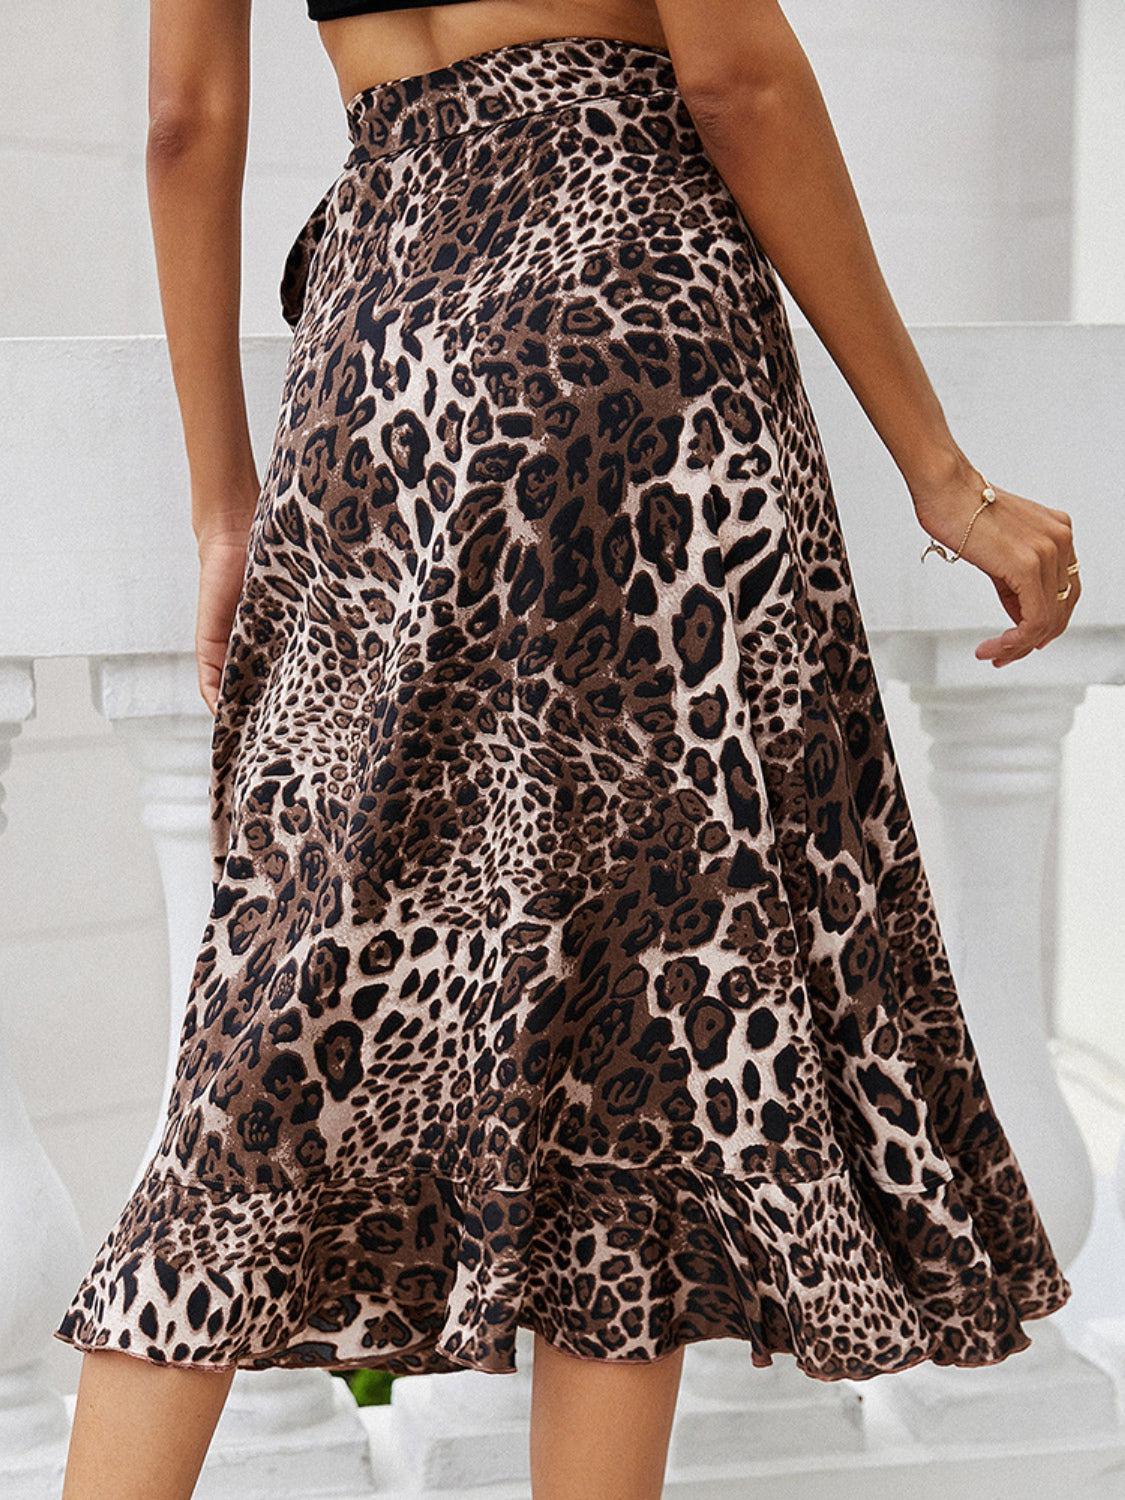 a woman wearing a leopard print skirt